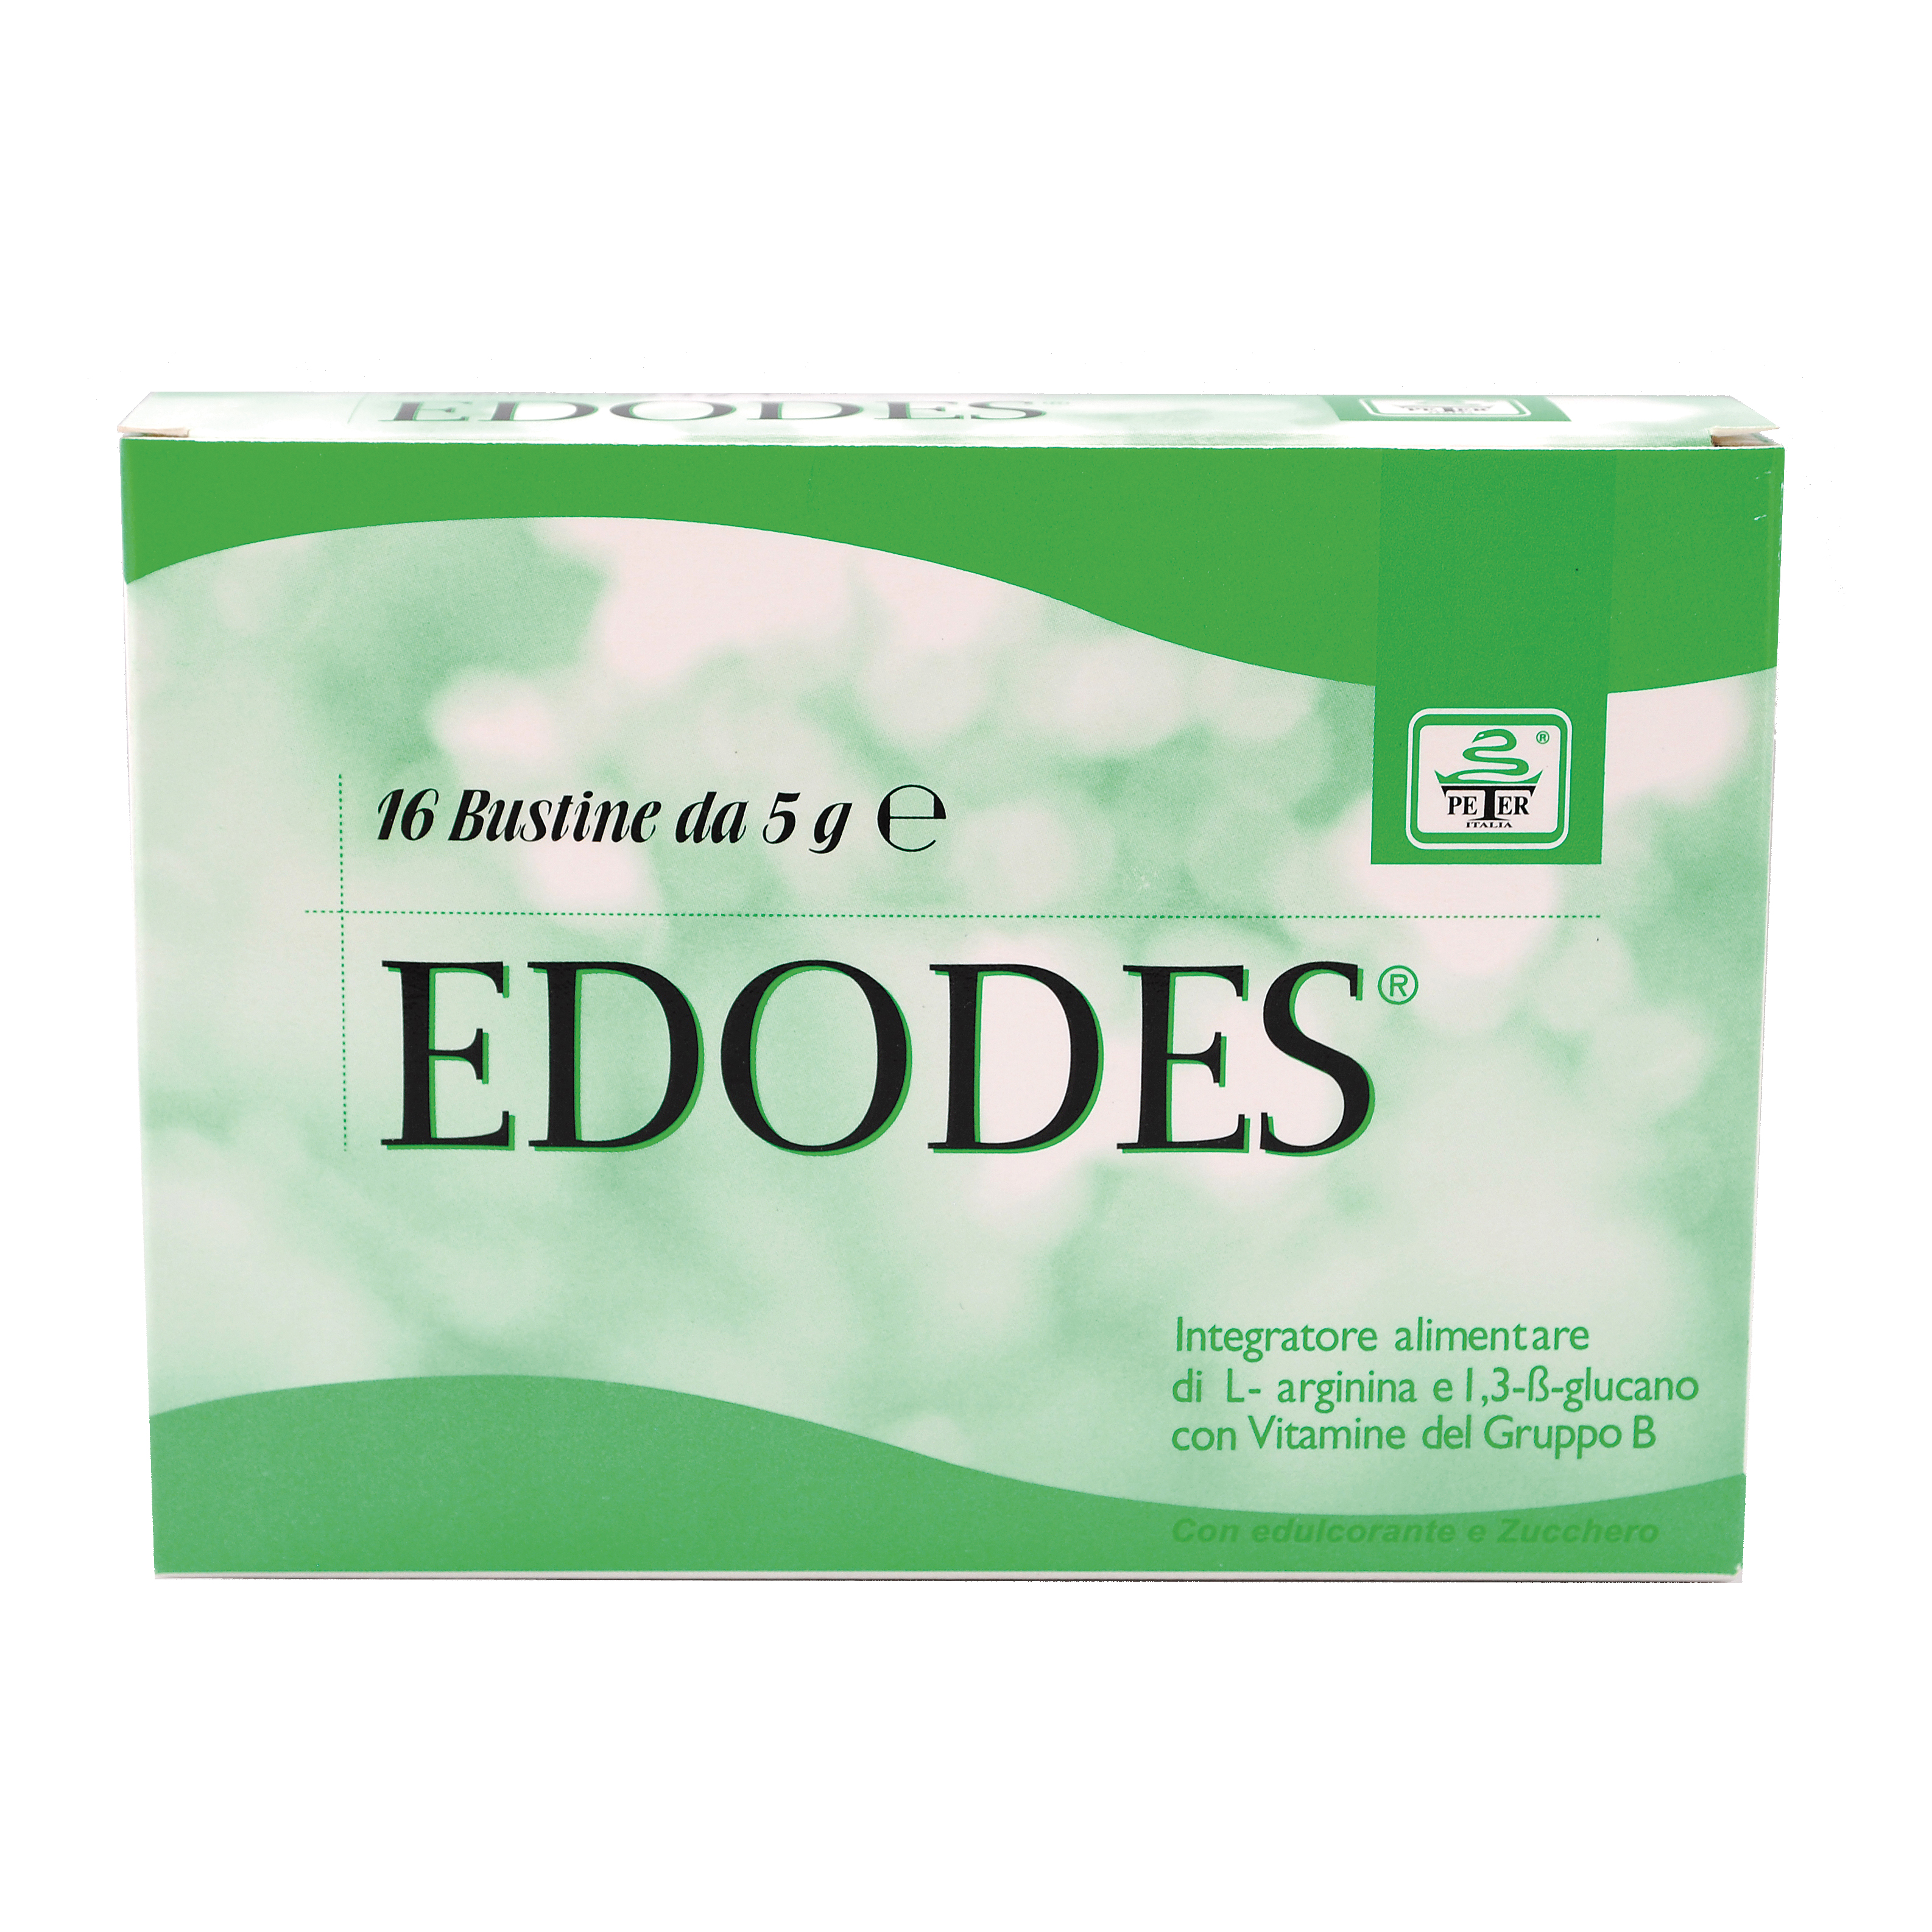 EDODES INTEGRAT 16BUST 5G